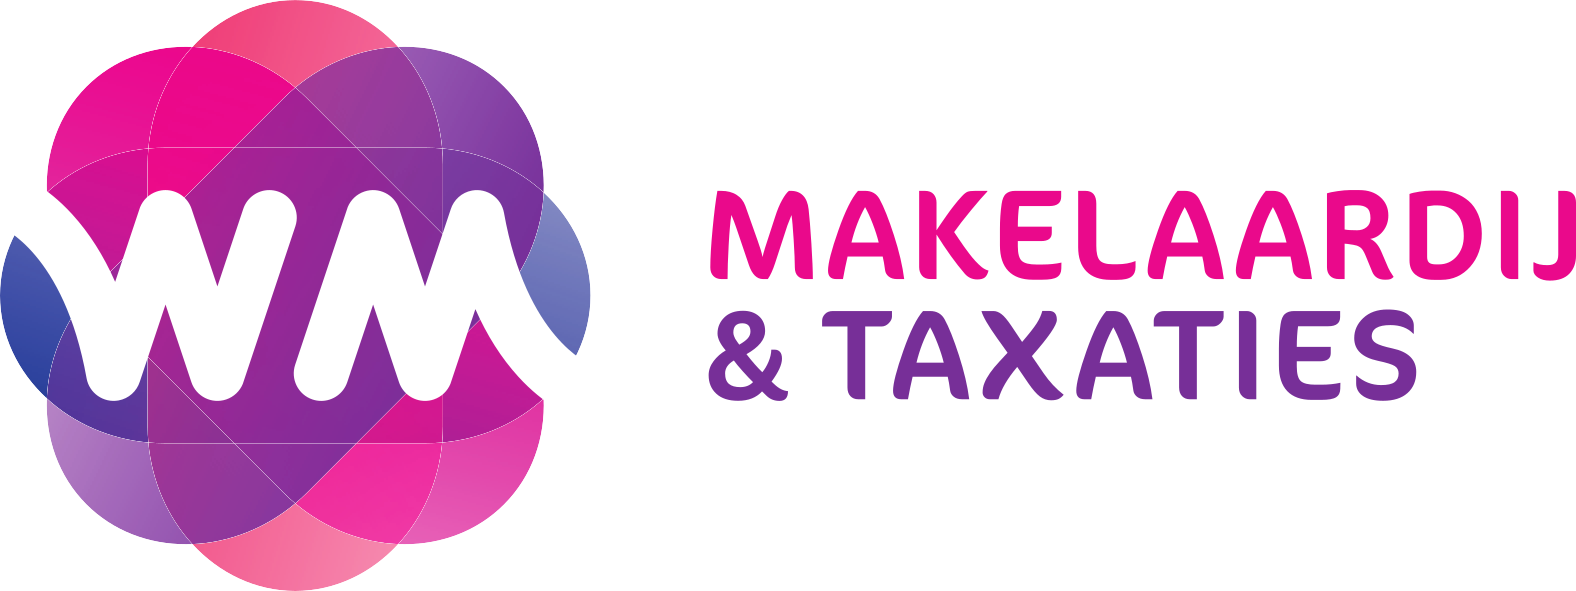 WM Makelaardij & Taxaties logo